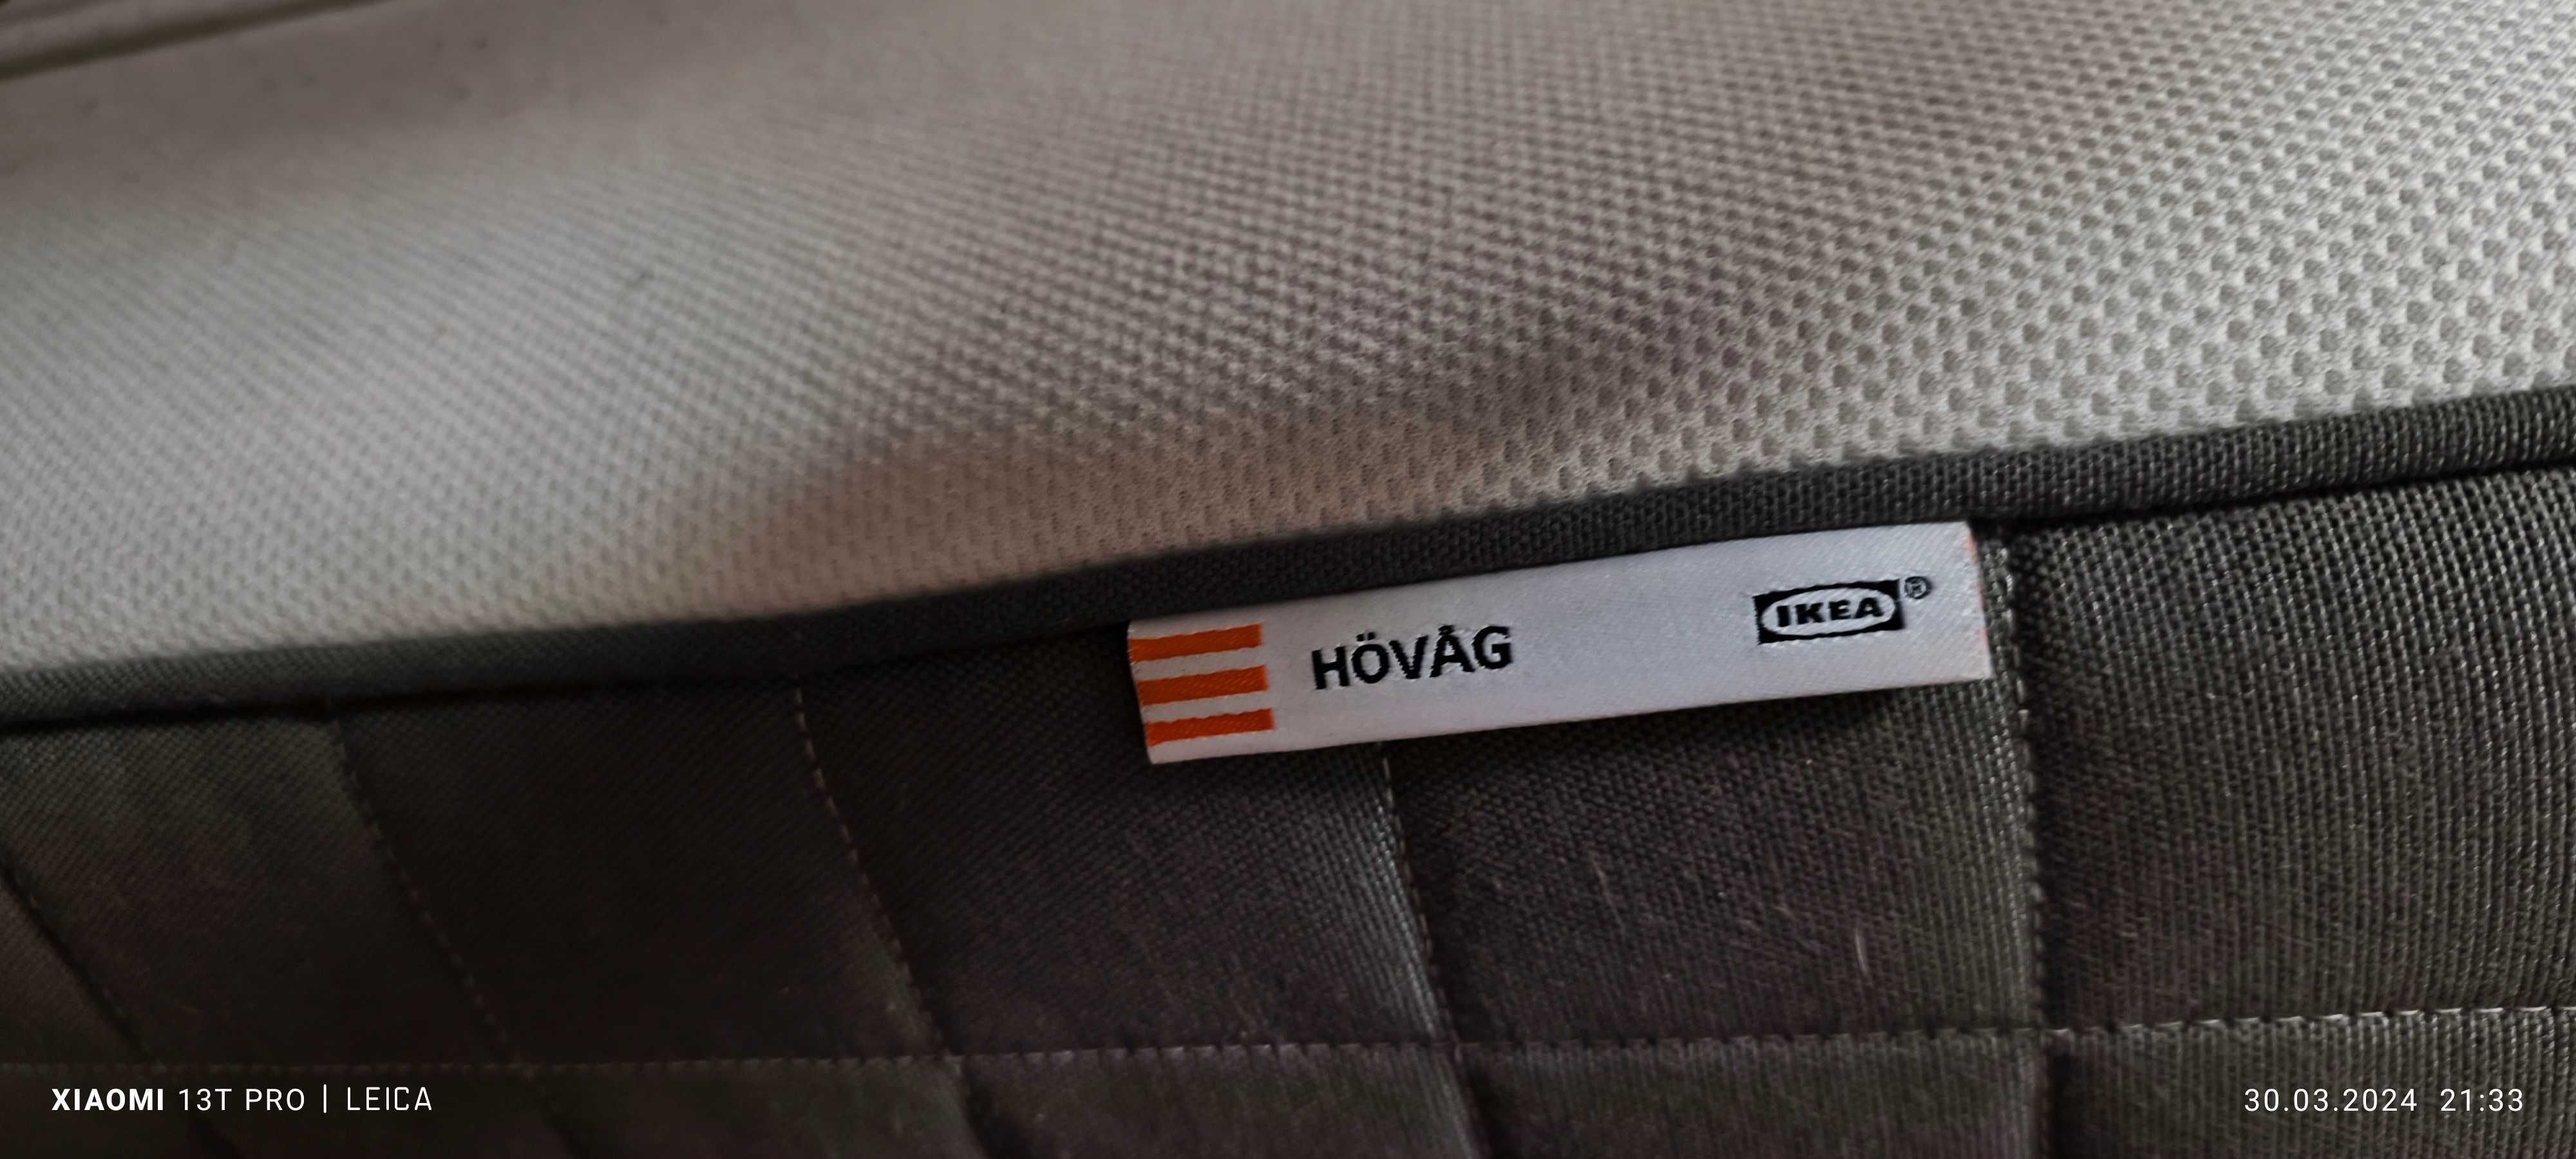 Materac sprężynowy Ikea Hovag kieszeniowy twardy